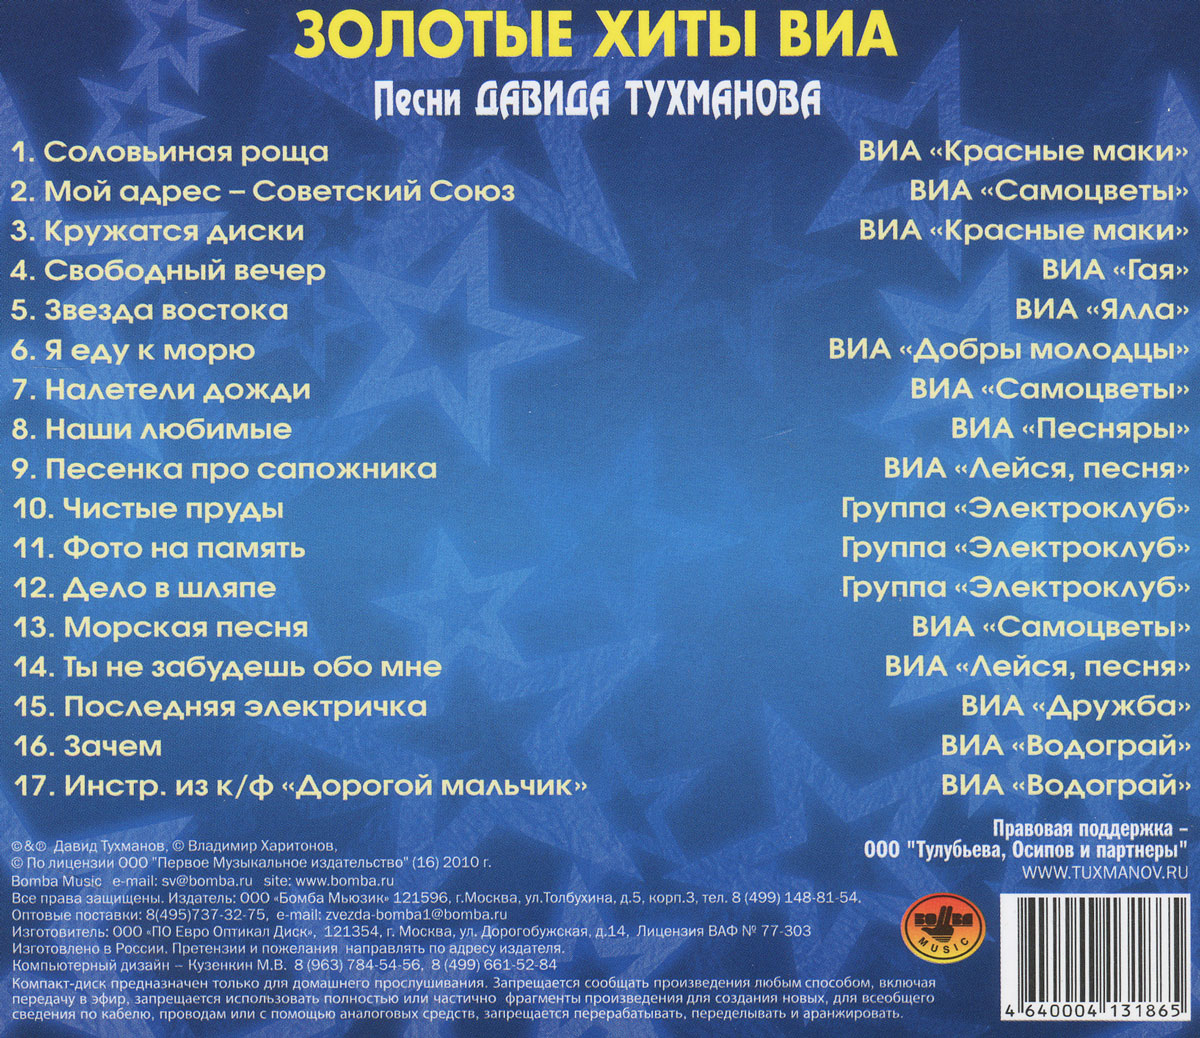 Песня под названием какая. Русские песни список. Список песен. Золотые хиты. Популярные песни список.